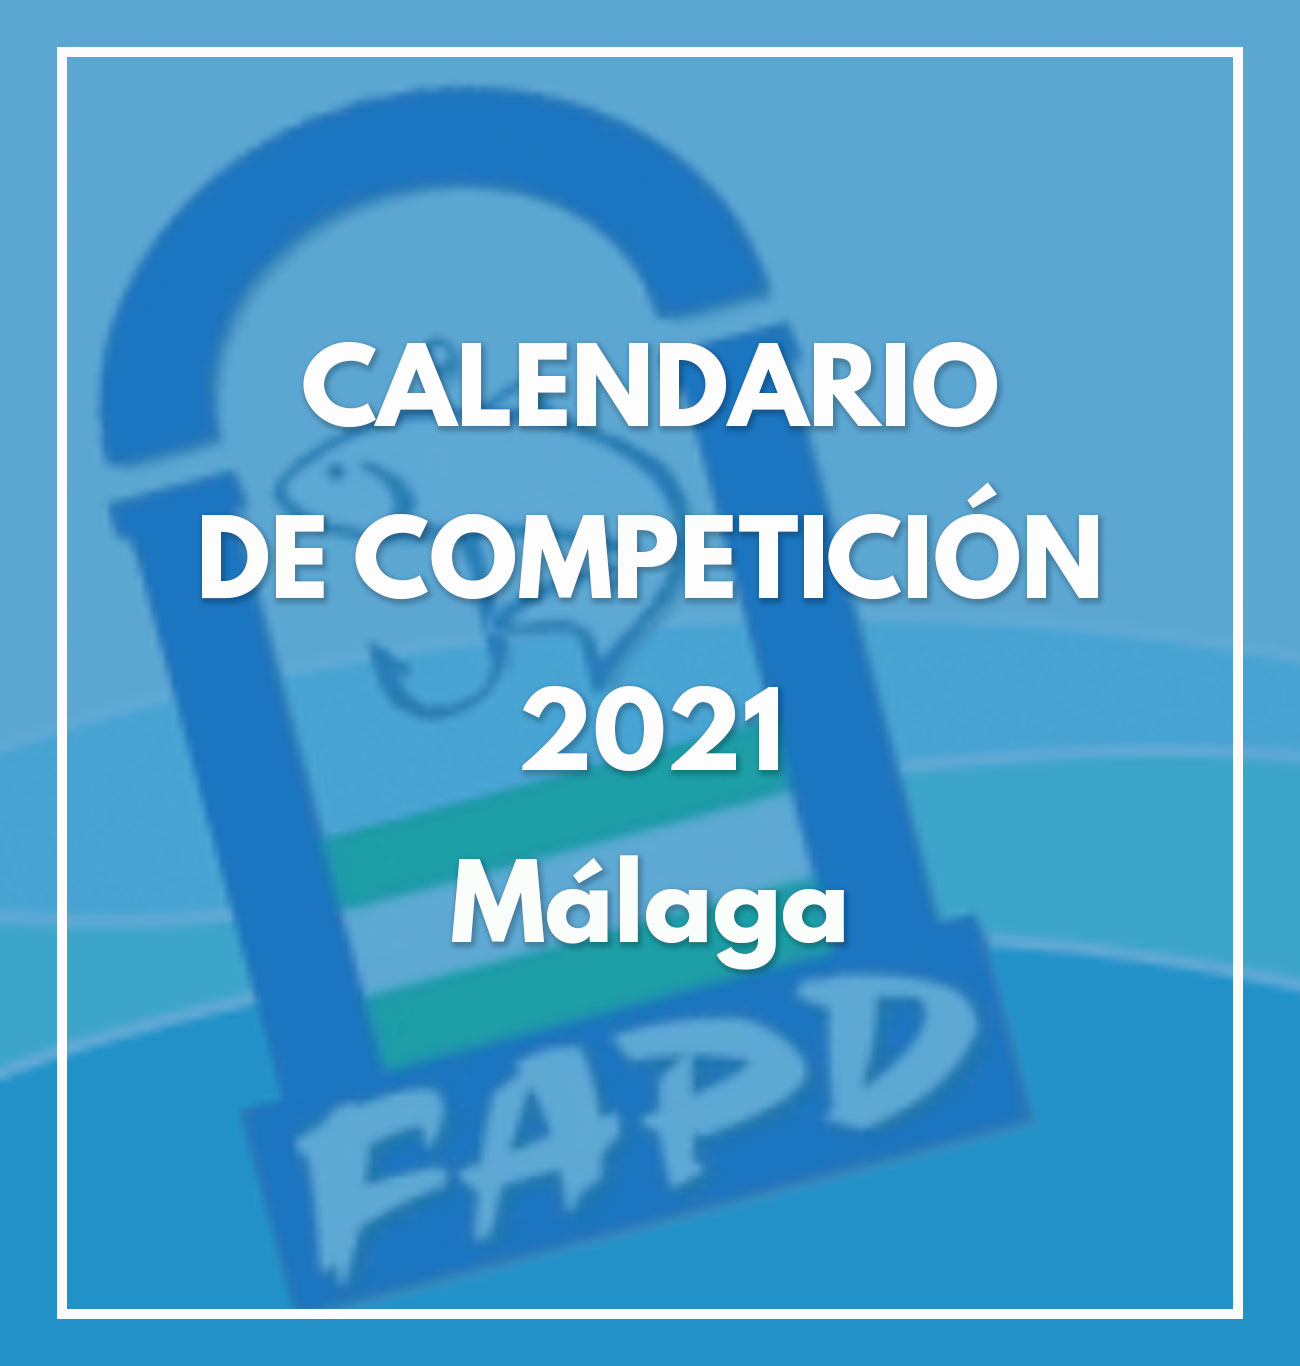 Calendario Malaga 2021